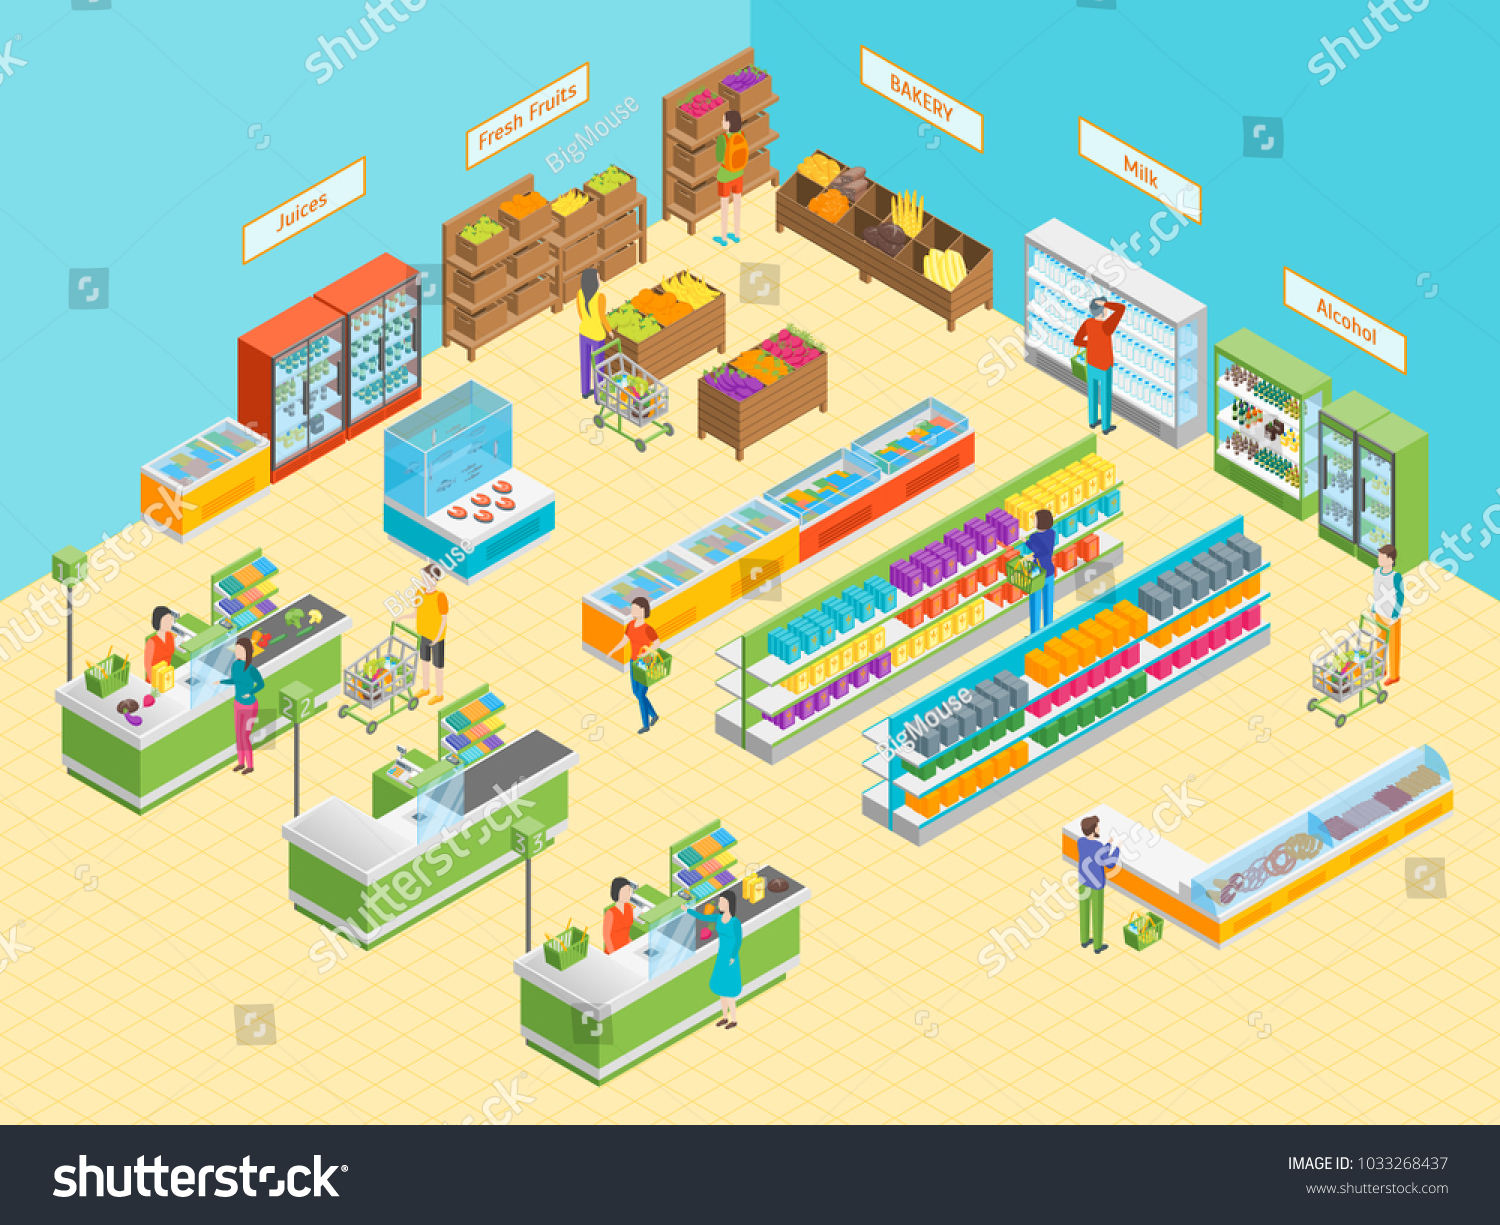 95 Supermarket floor plan Stock Illustrations, Images & Vectors ...